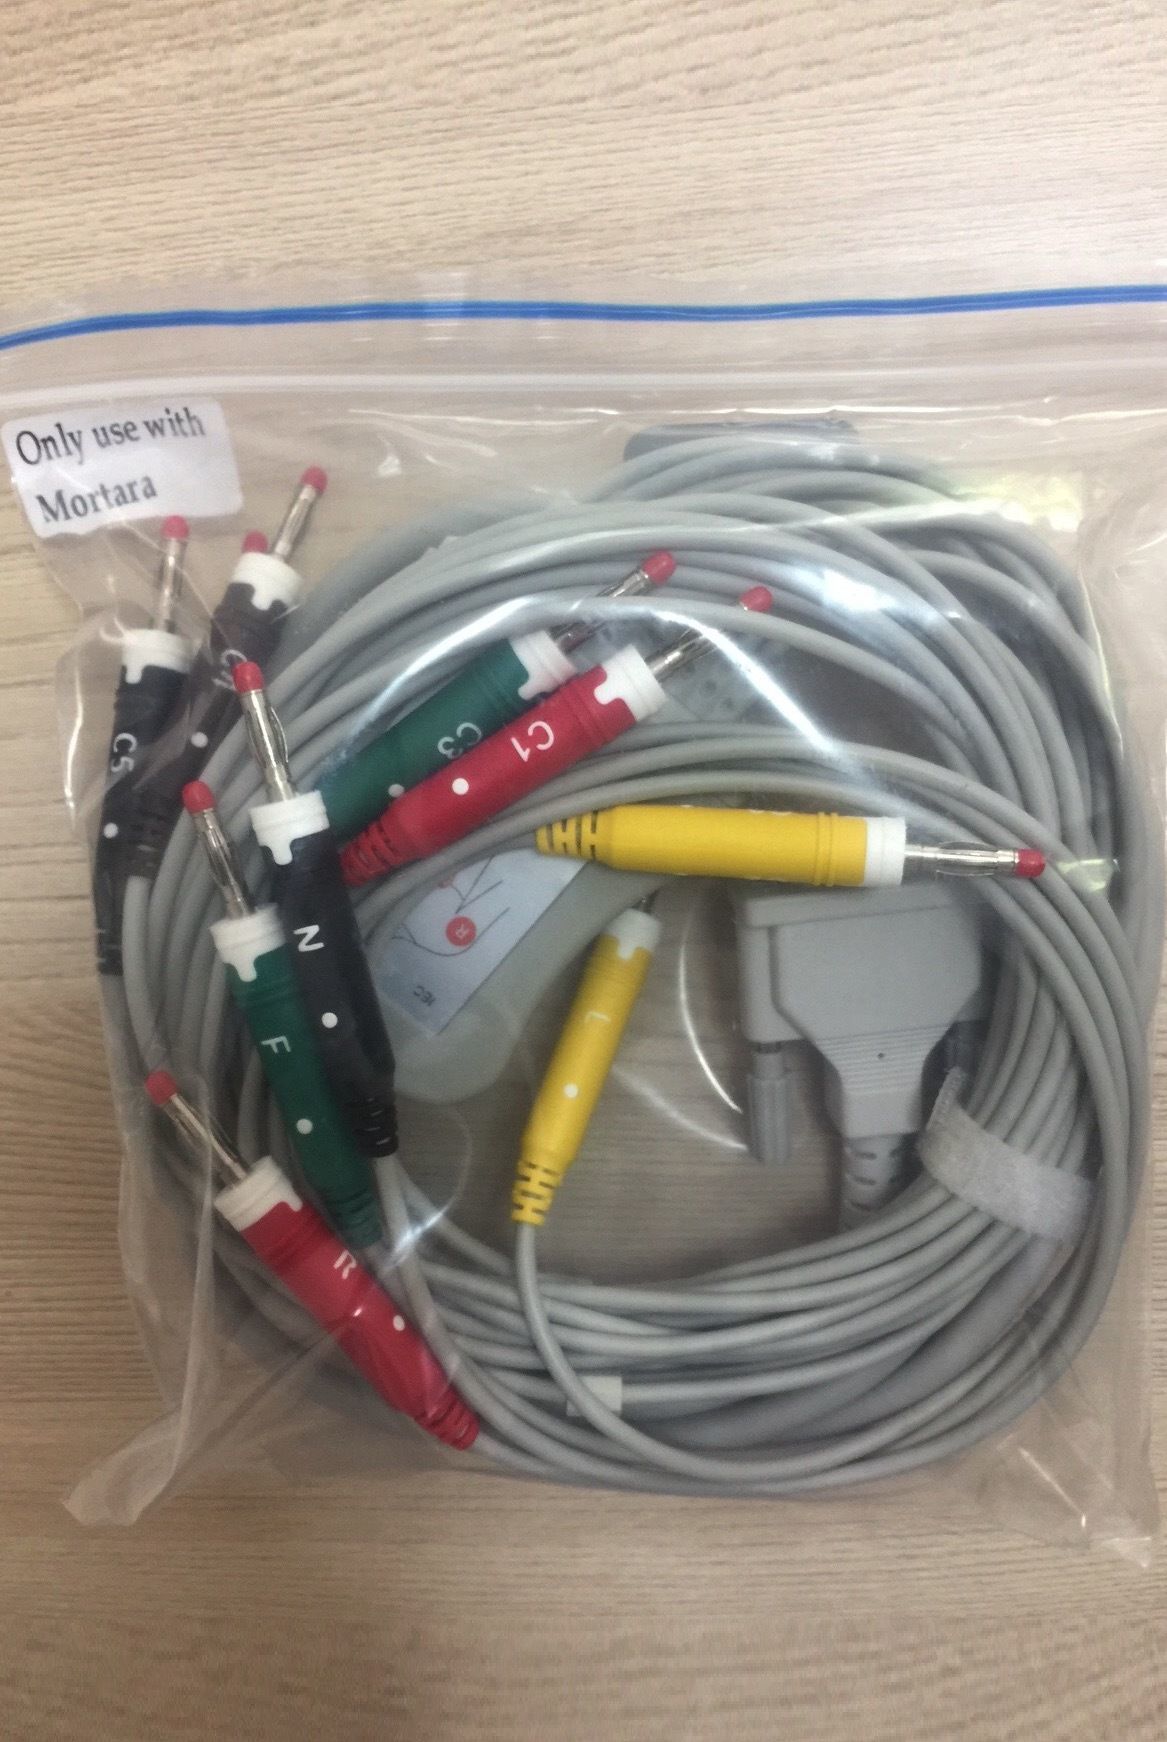 EKG Cable Banana 4.0 IEC for EKG Unit Mortara ELI-150_สายอีเคจีสำหรับเครื่องวัดบันทึกค่าคลื่นไฟฟ้าหัวใจ Motara ELI-150